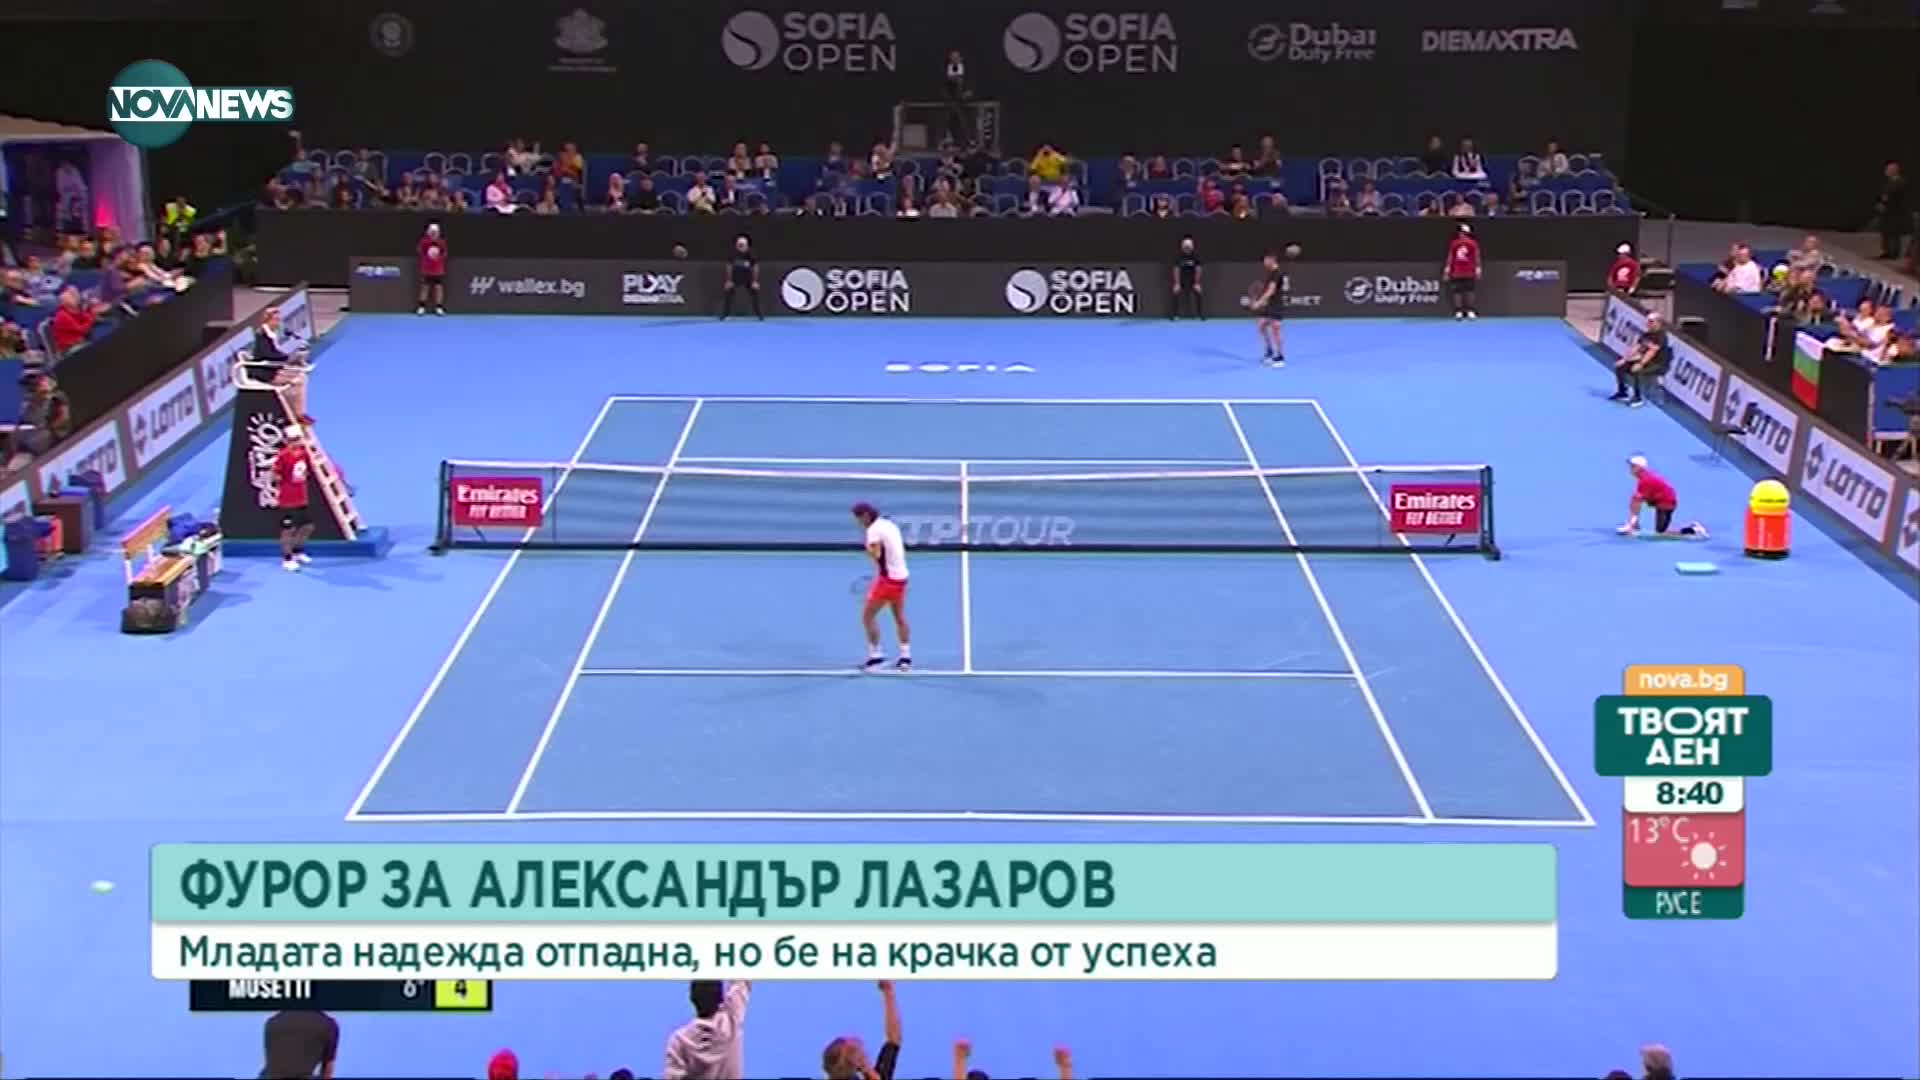 Лазаров едва не изхвърли четвъртия поставен от Sofia Open